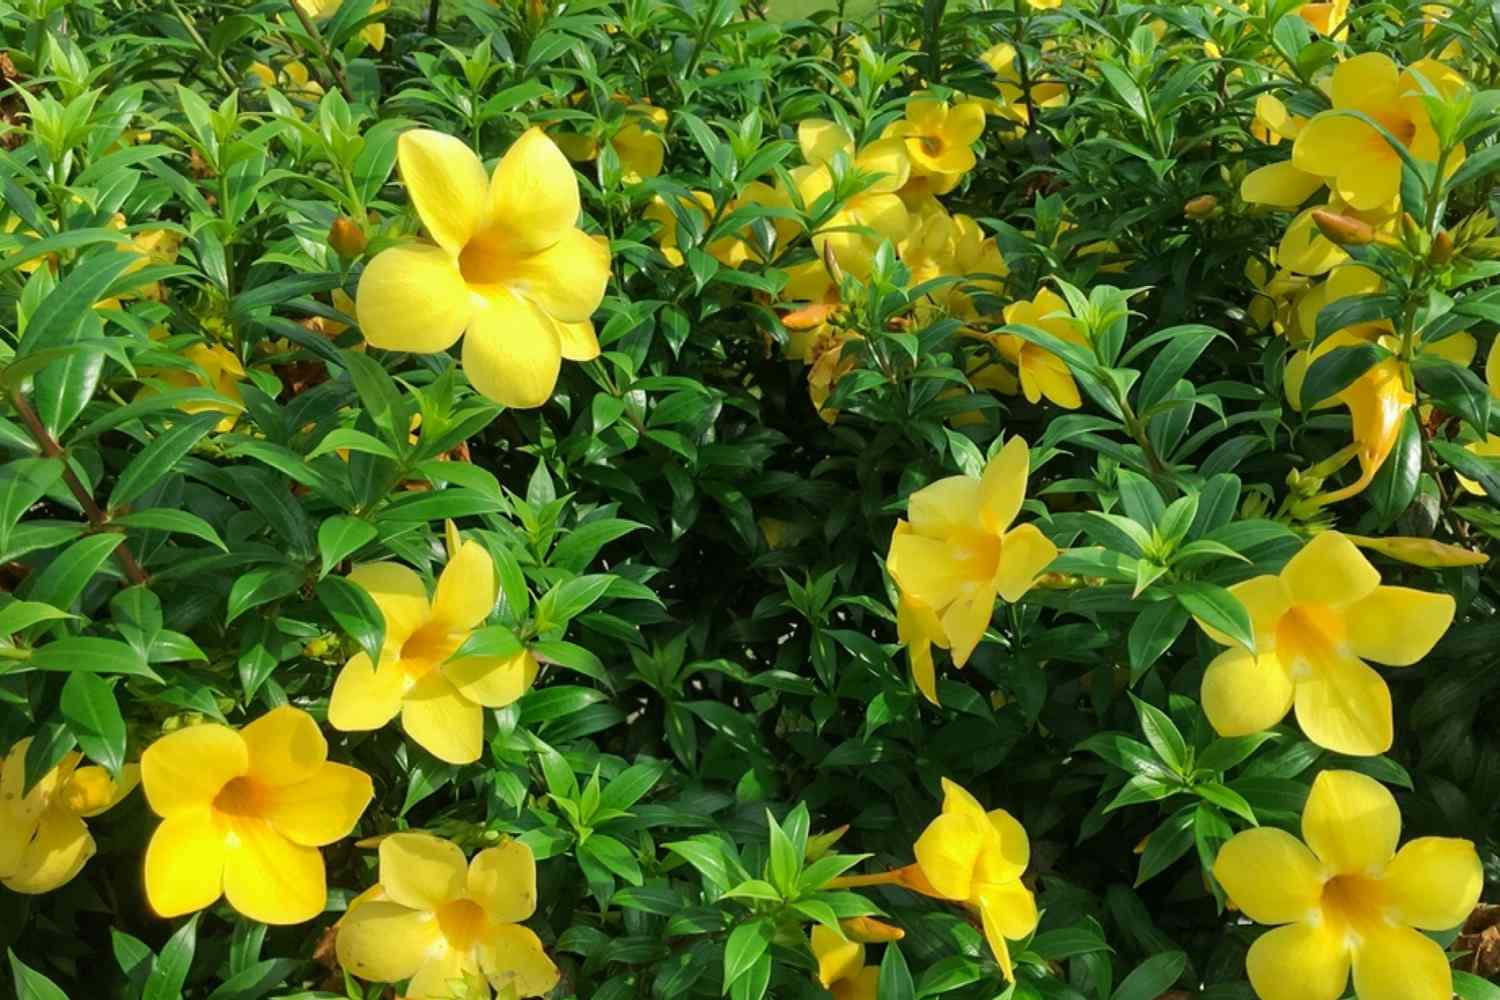 Arbusto de trombeta Allamanda com flores amarelas amanteigadas em hastes com folhas brilhantes